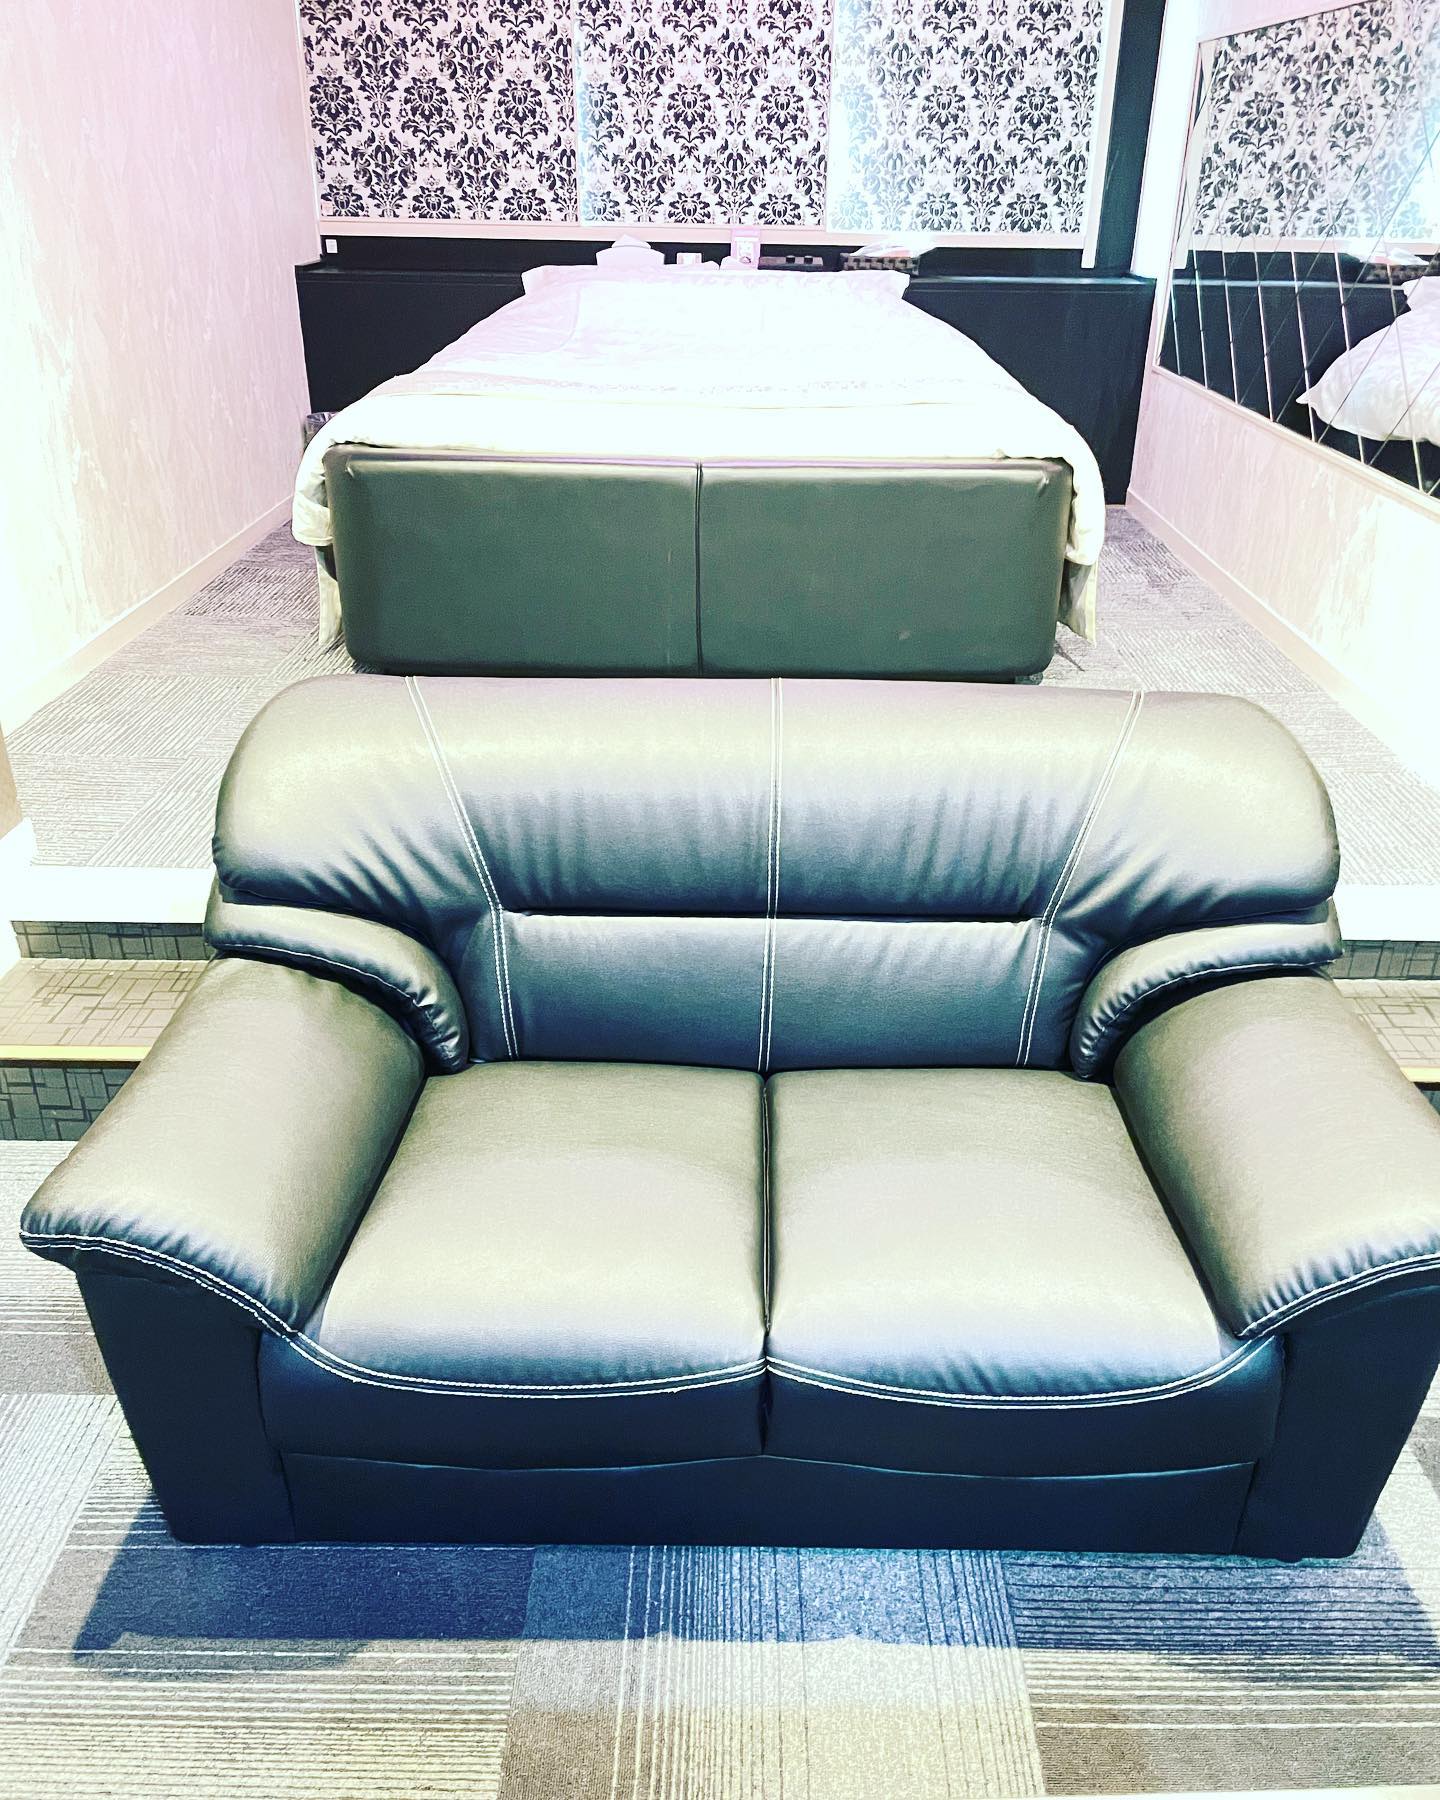  110号室のソファーを新しくしました#蒲郡市ホテル#コロナ対策ホテル#ラグーナ蒲郡近く#格安ホテル - ホテル プチエンゼル 蒲郡